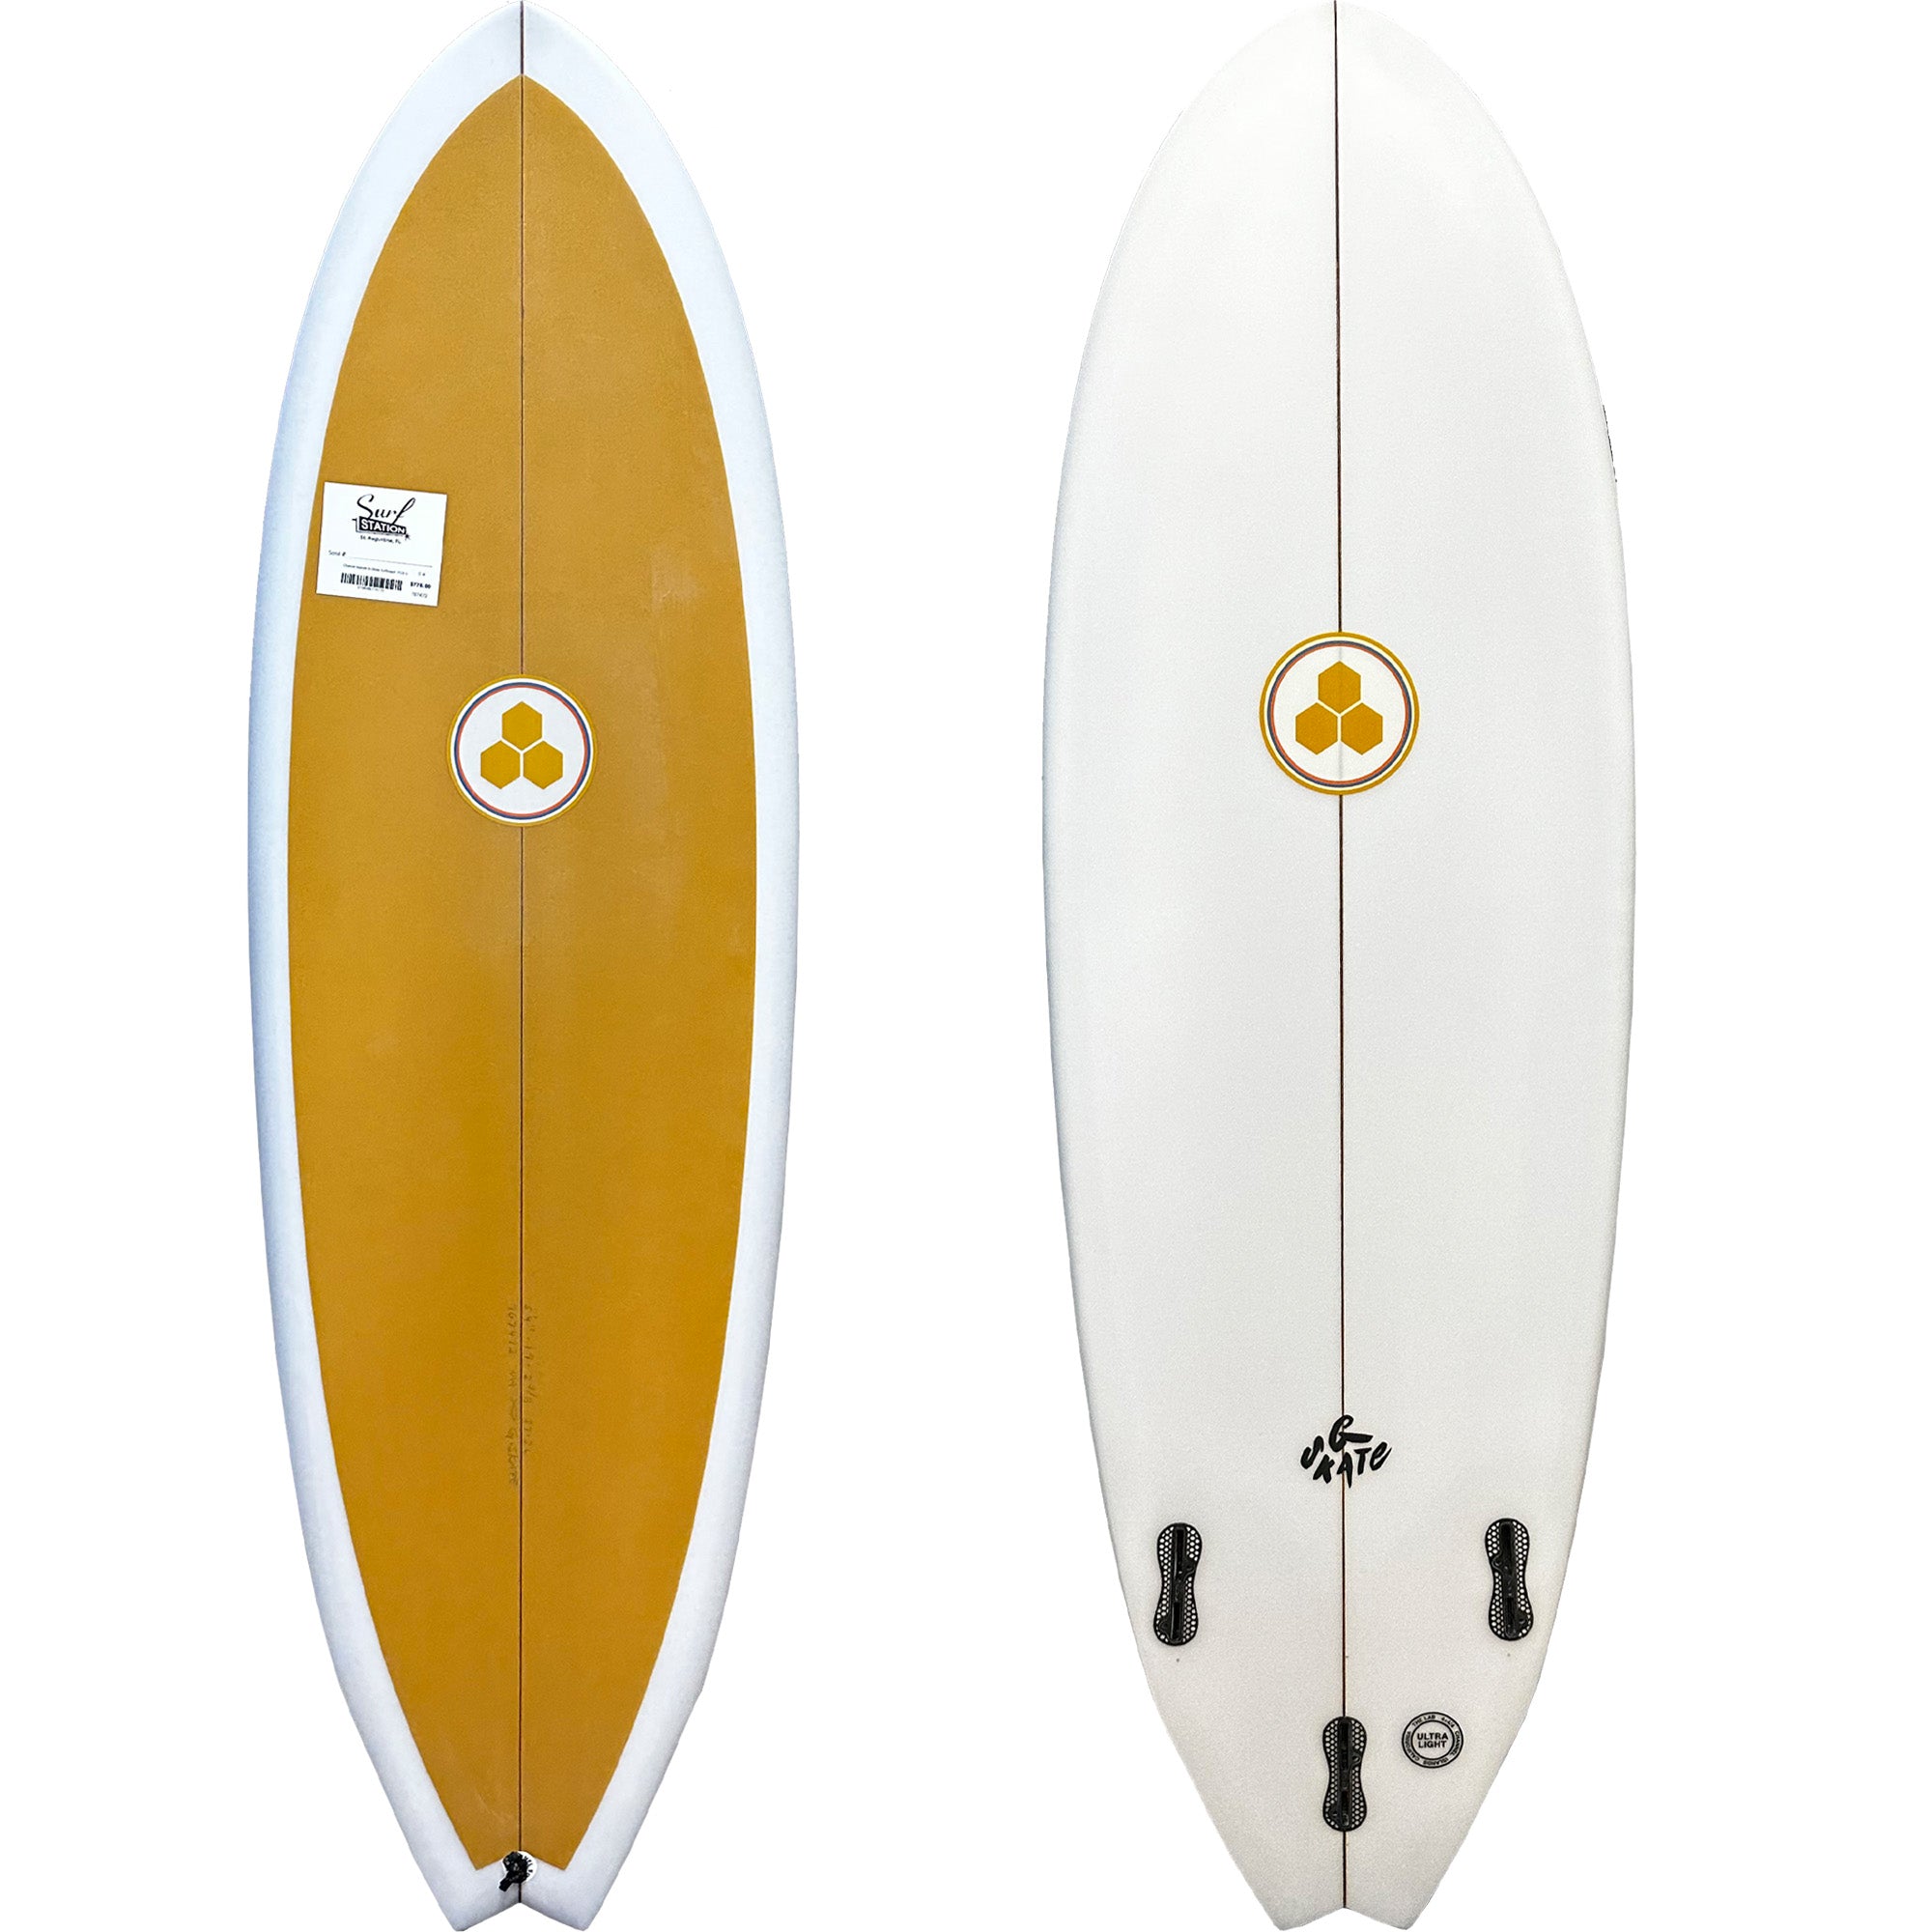 Channel Islands G-Skate Surfboard - FCS II